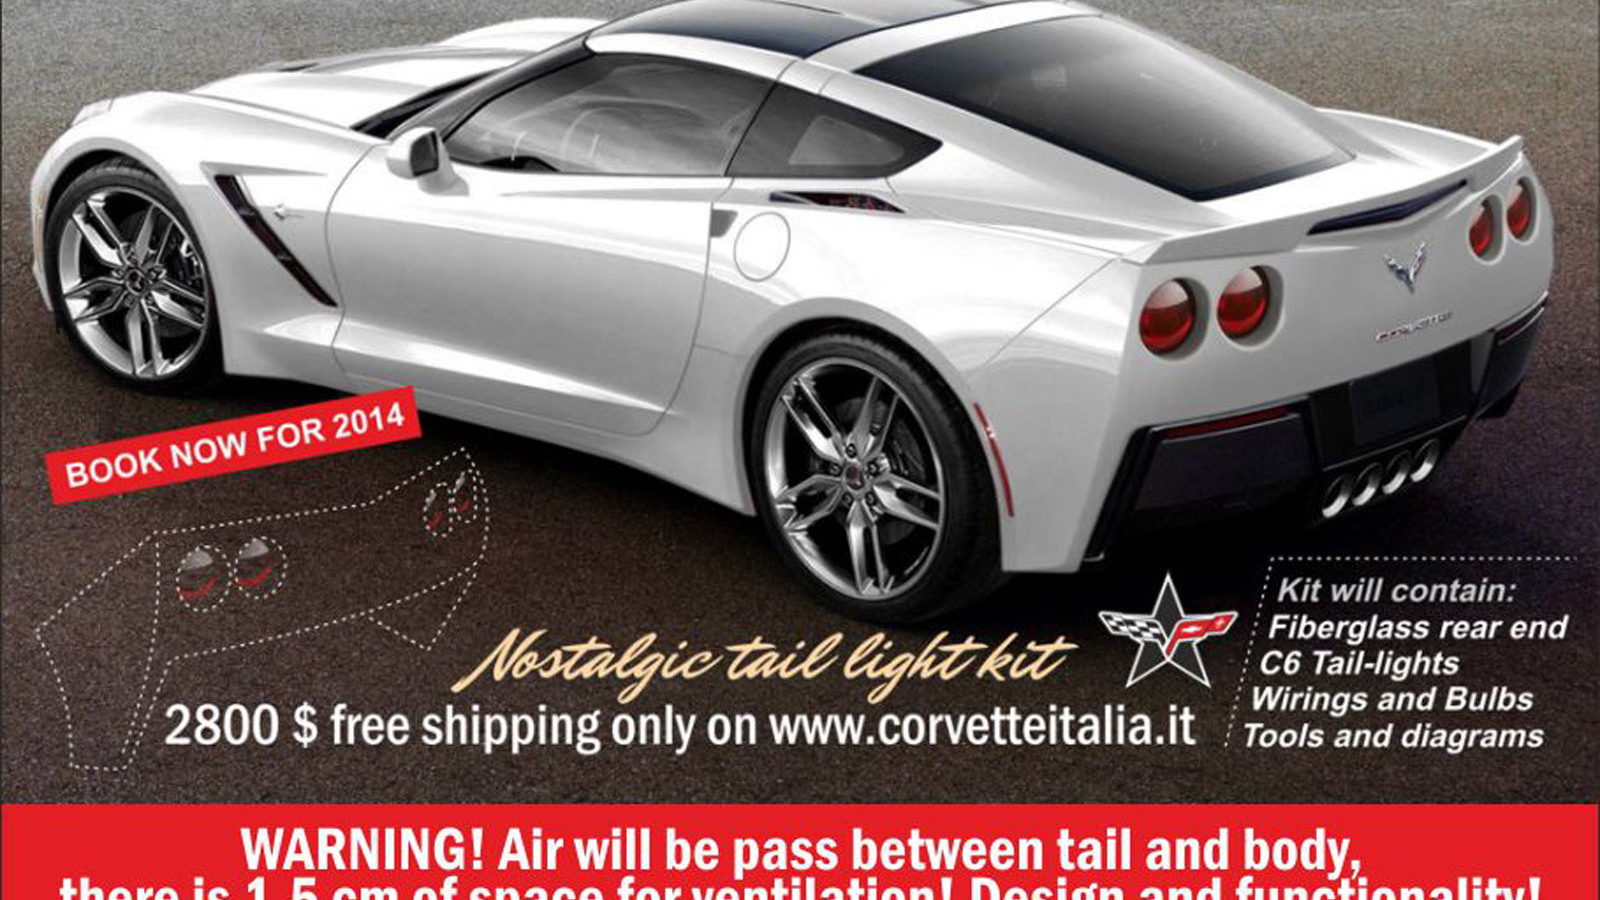 Round tail-light kit for 2014 Chevrolet Corvette Stingray - Image: Corvette Italia